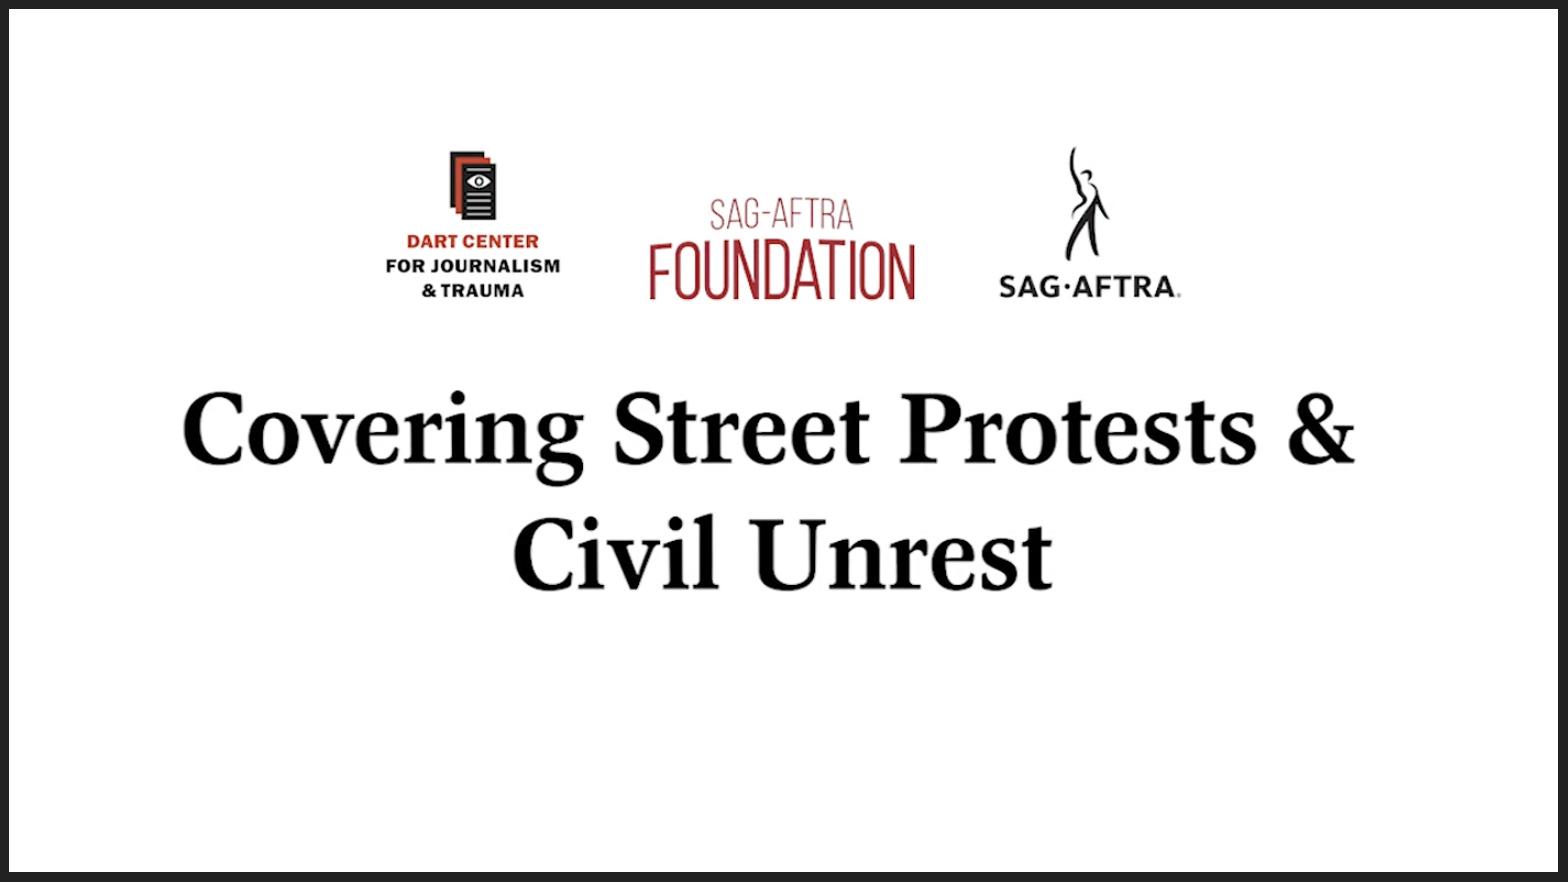 'Dart Center: Covering Street Protests & Civil Unrest' en negro con el logotipo de Dart Center, el logotipo de la Fundación SAG-AFTRA y el logotipo de SAG-AFTRA en la parte superior